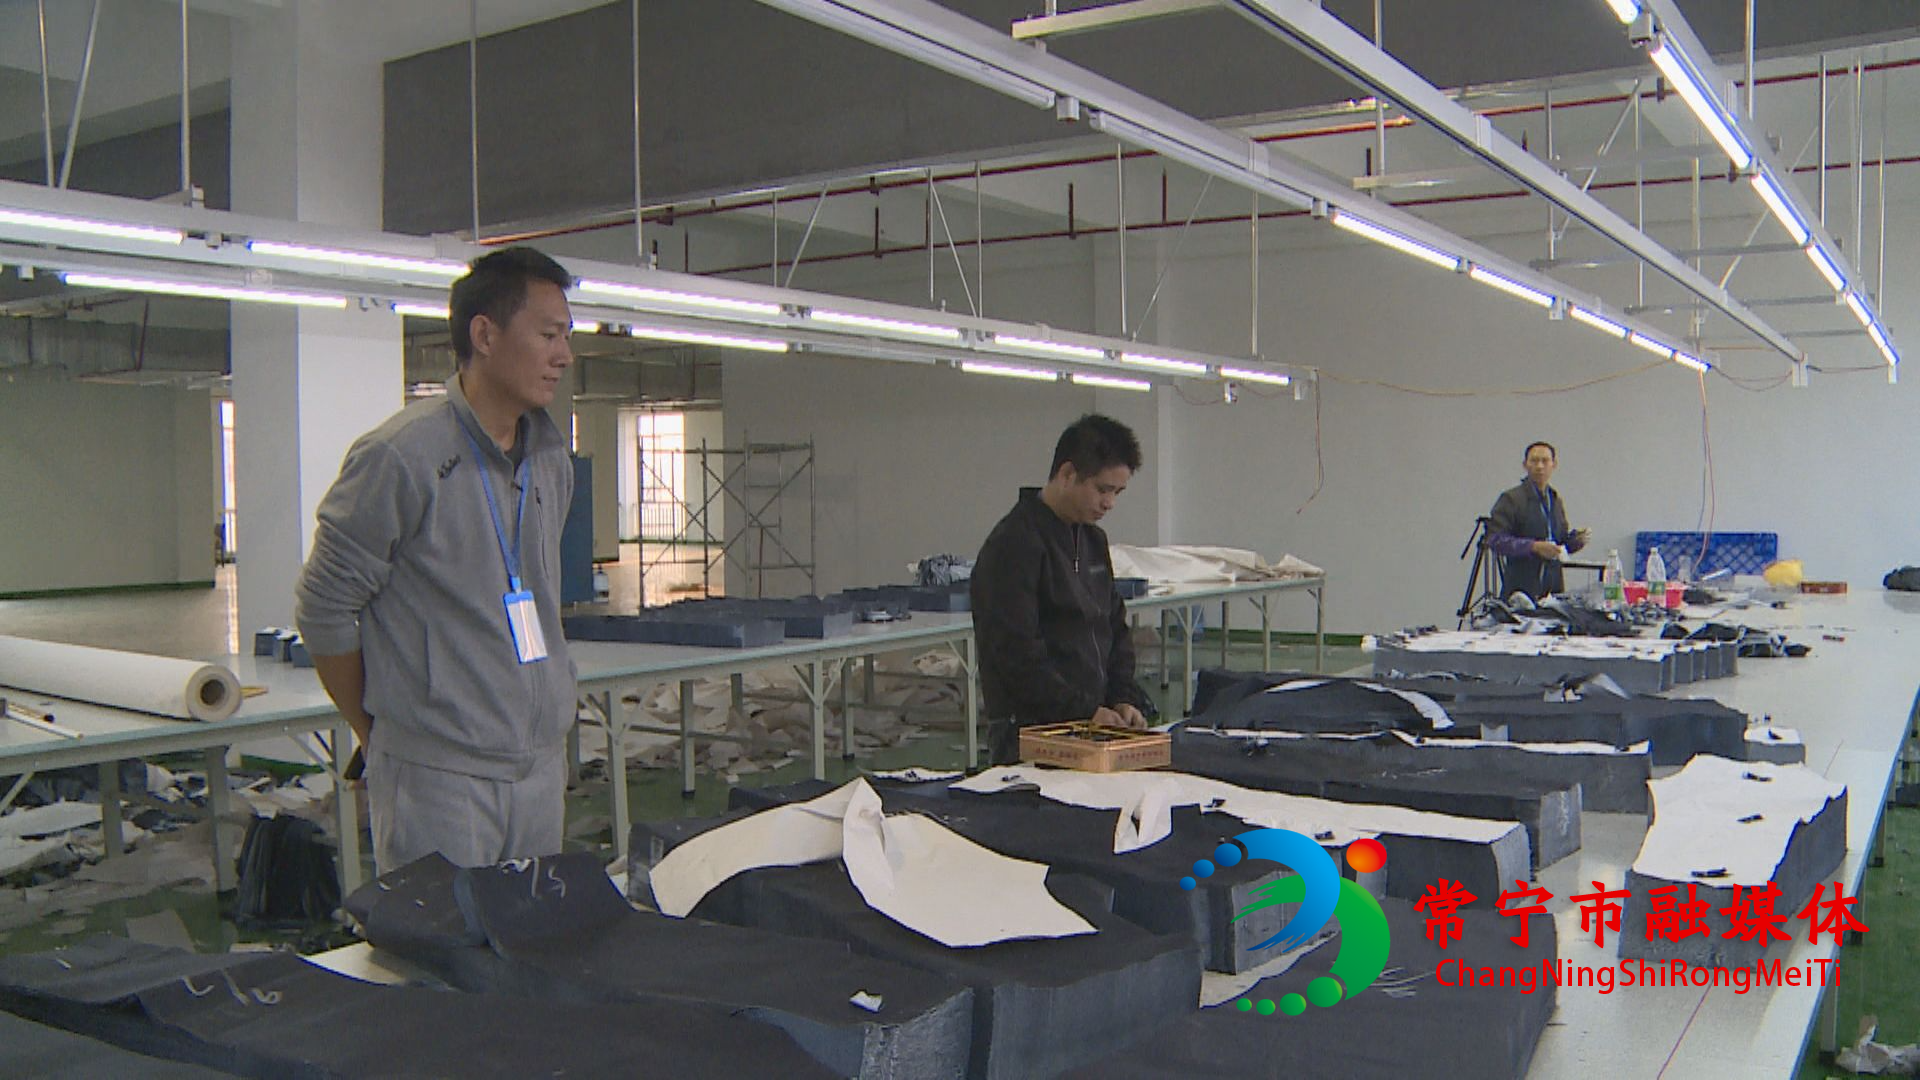 喜！湘南纺织产业基地第一家牛仔服饰企业正式开工投产 纺织产业集群吹响冲锋号角